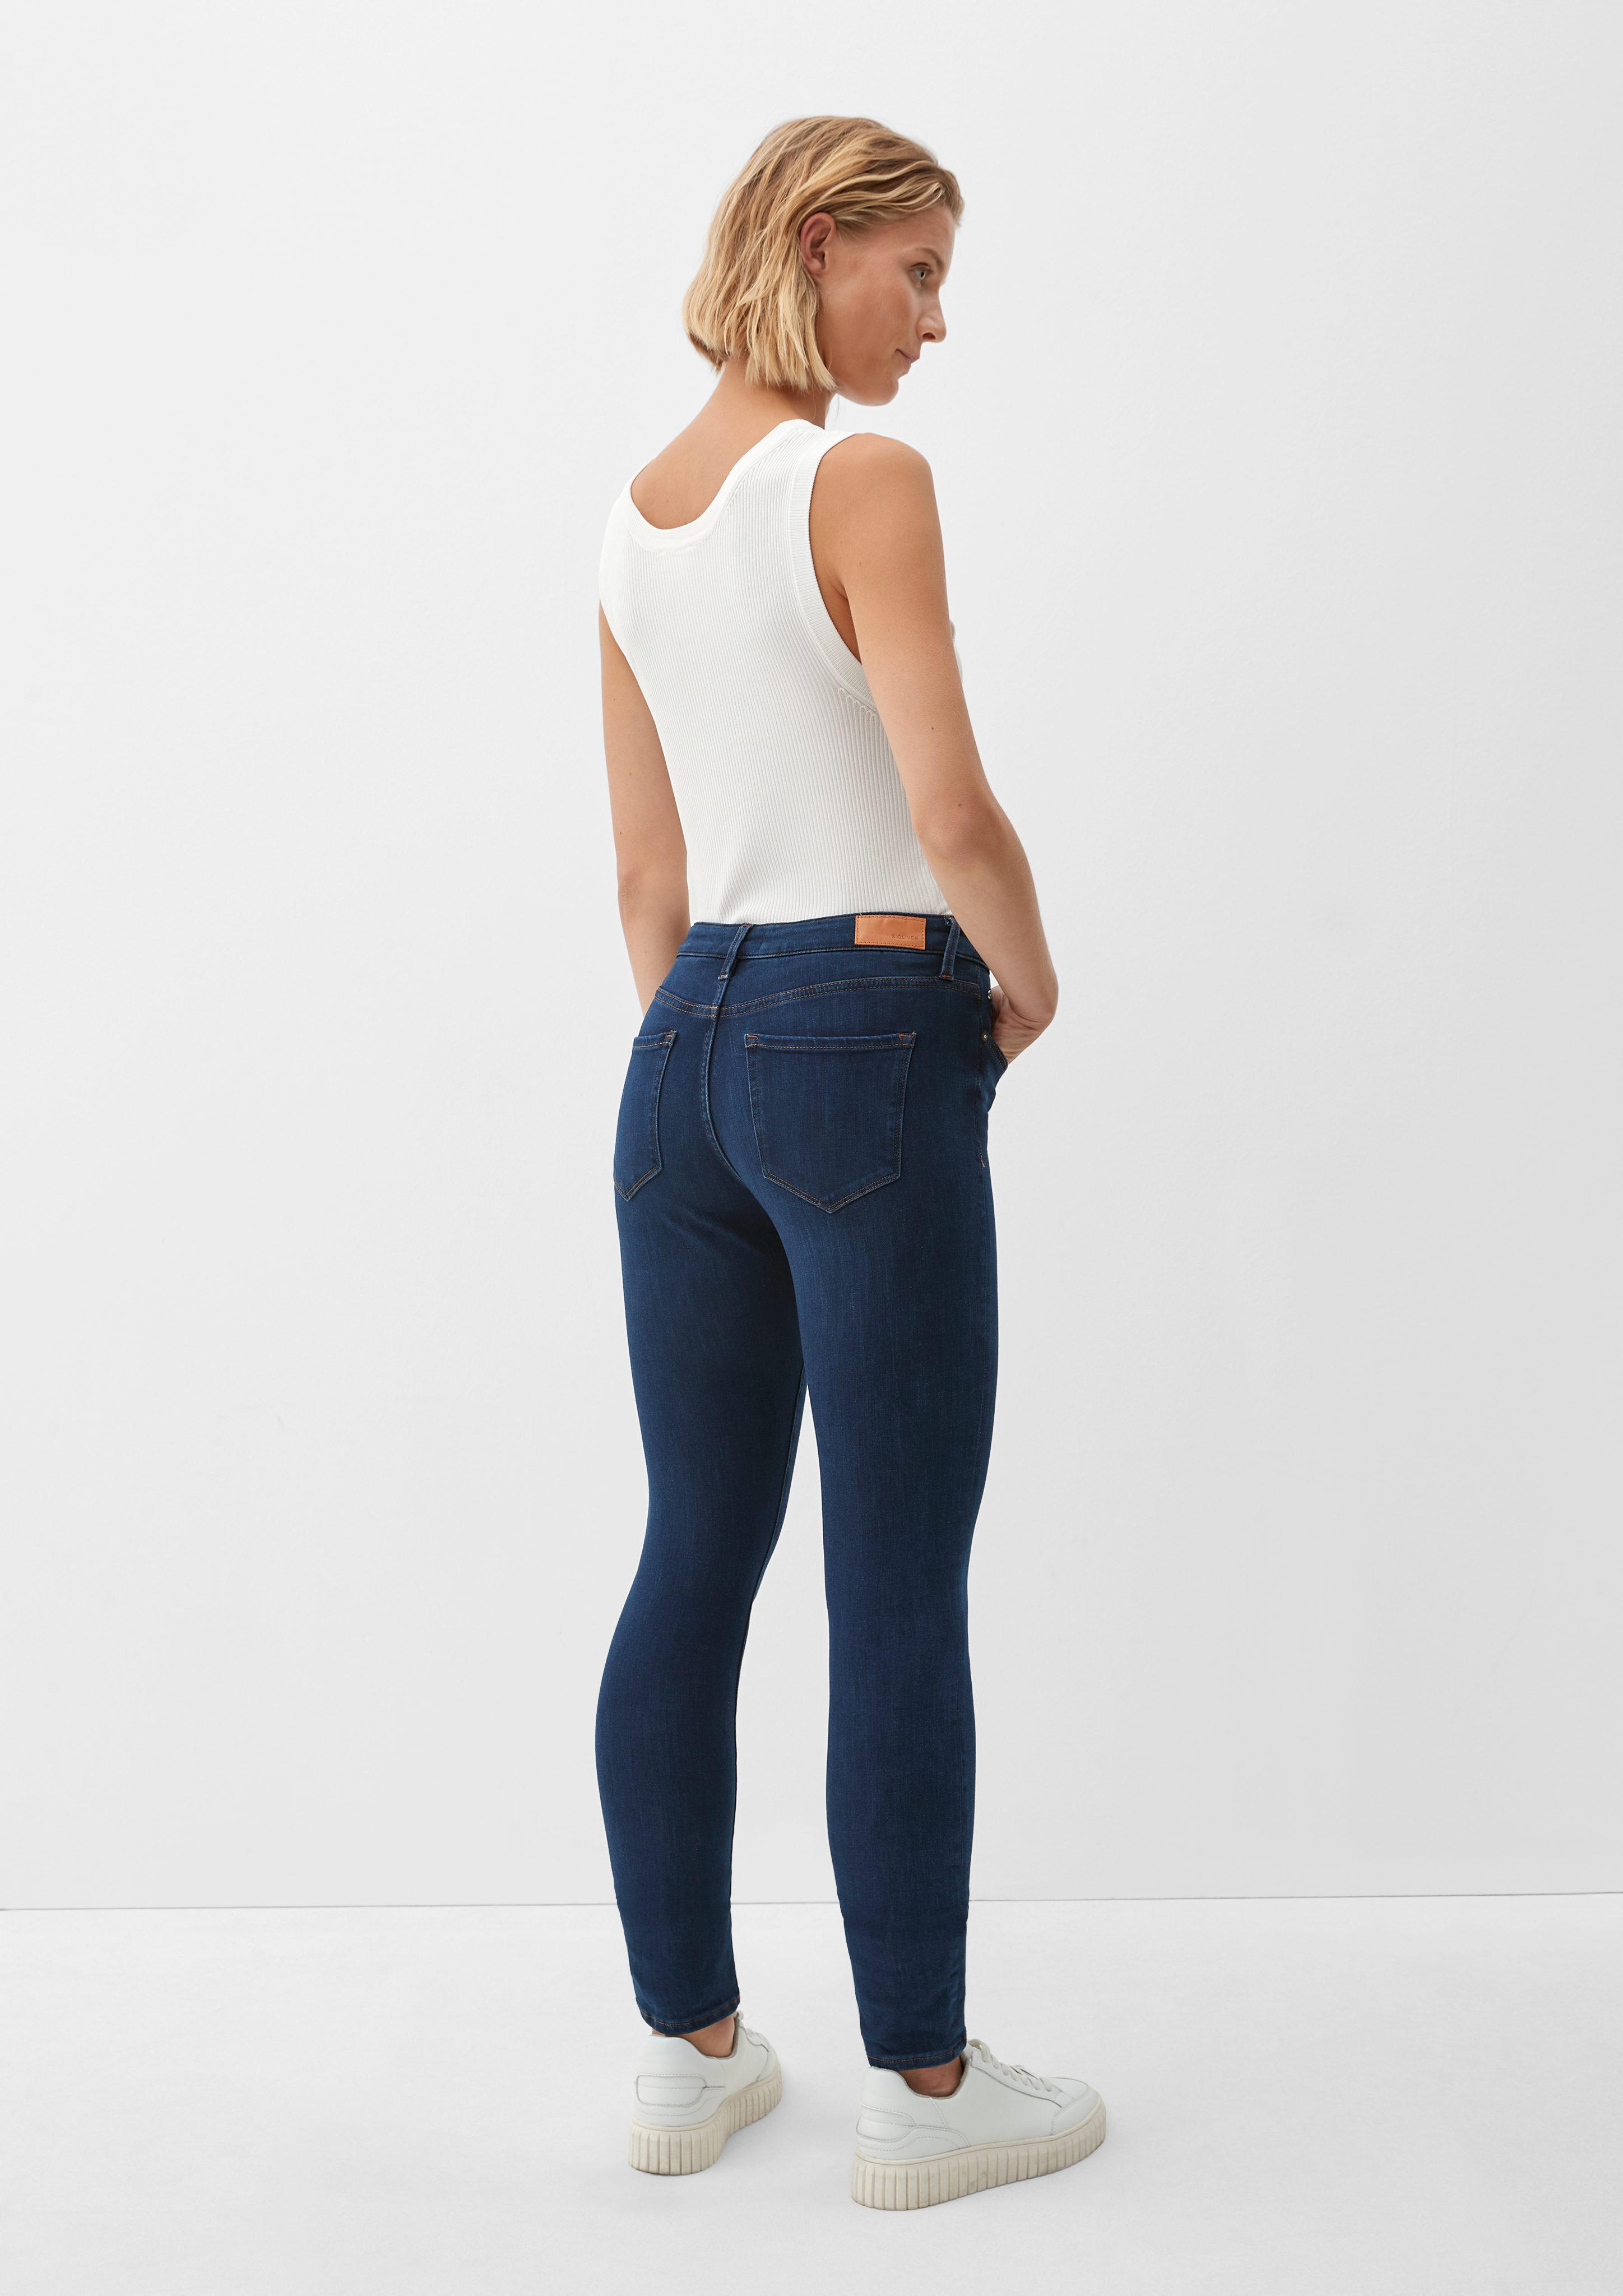 / Jeans Fit Skinny Rise Mid dark / Izabell Skinny / Leg blue Label-Patch 5-Pocket-Jeans s.Oliver